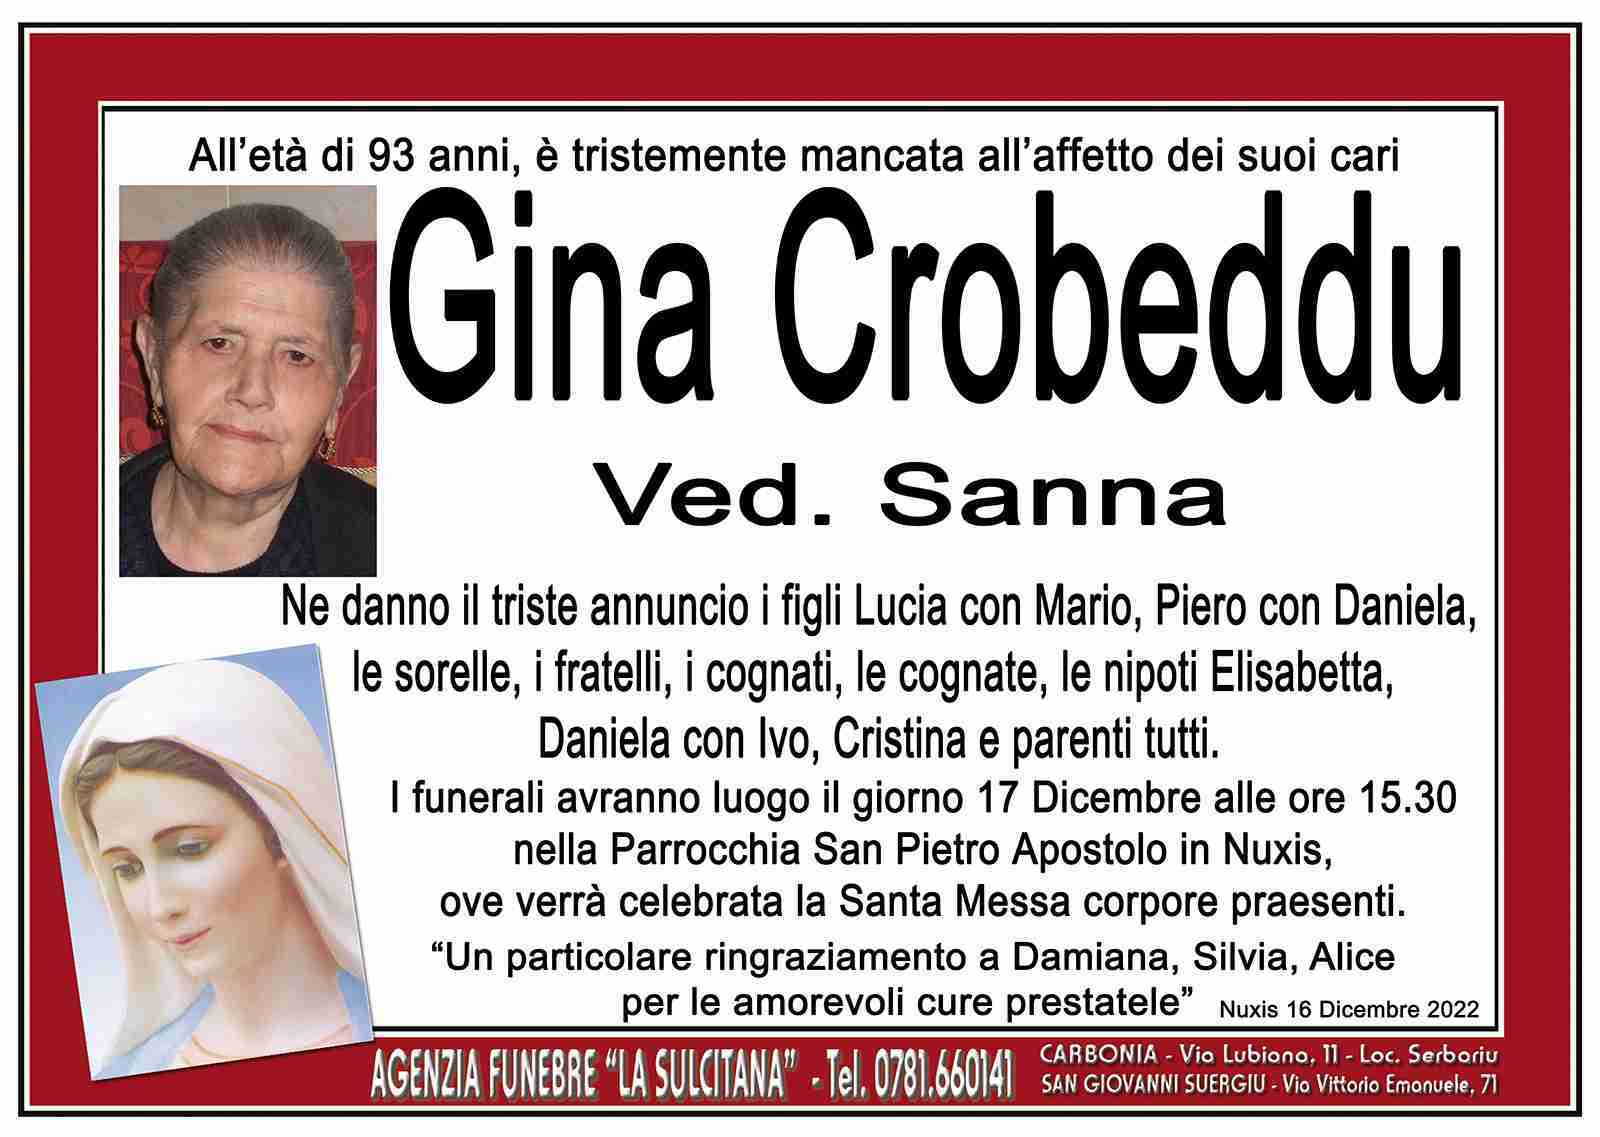 Gina Crobeddu